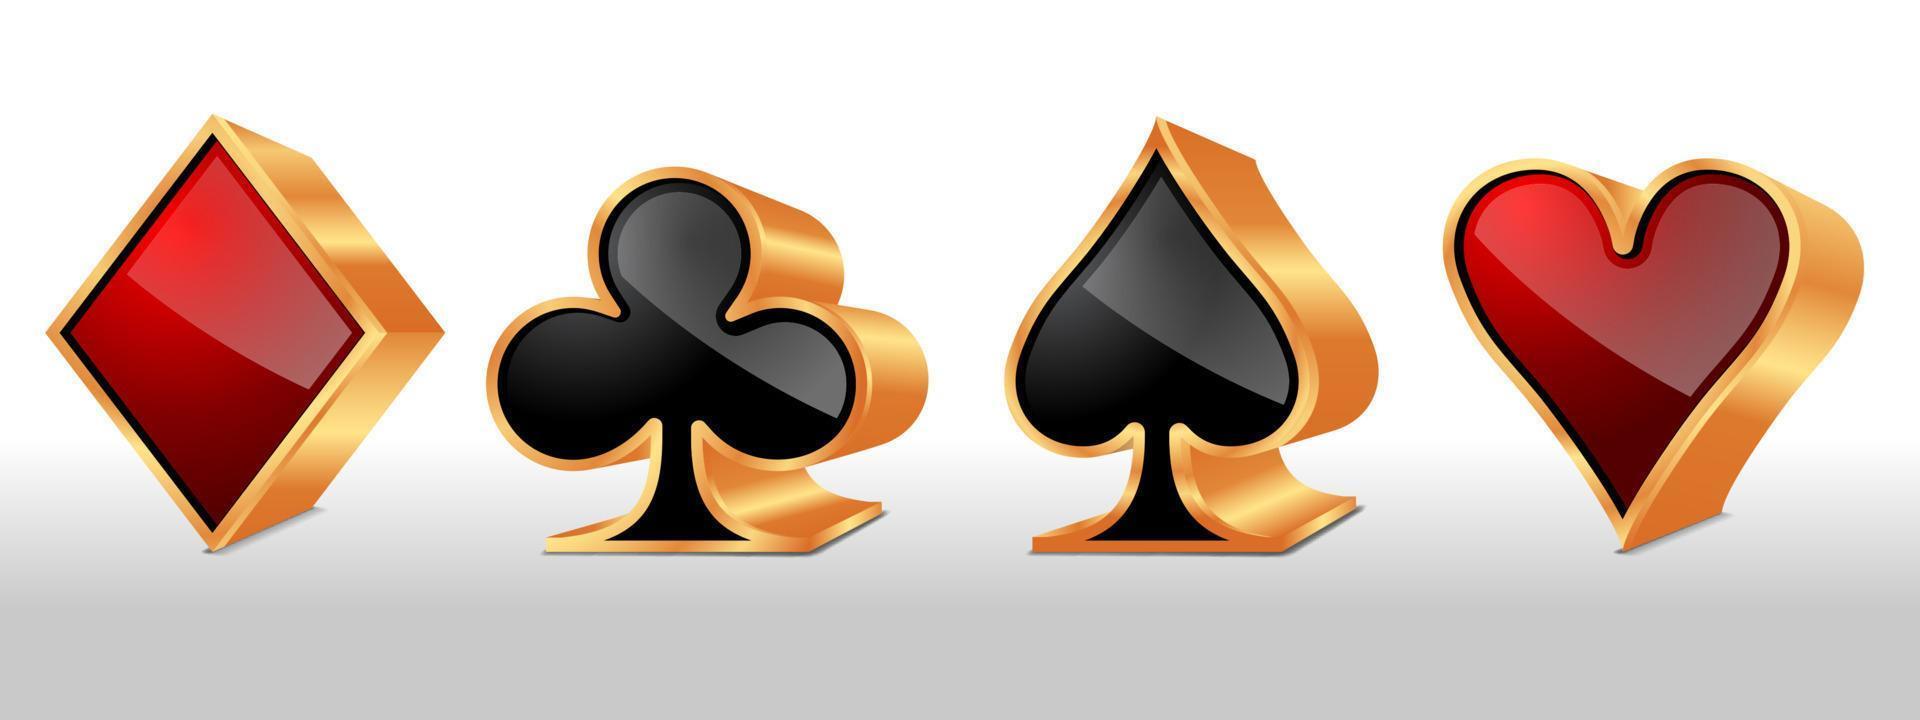 poker carta abiti. impostato di quattro assi giocando carte abiti. vettore illustrazione.